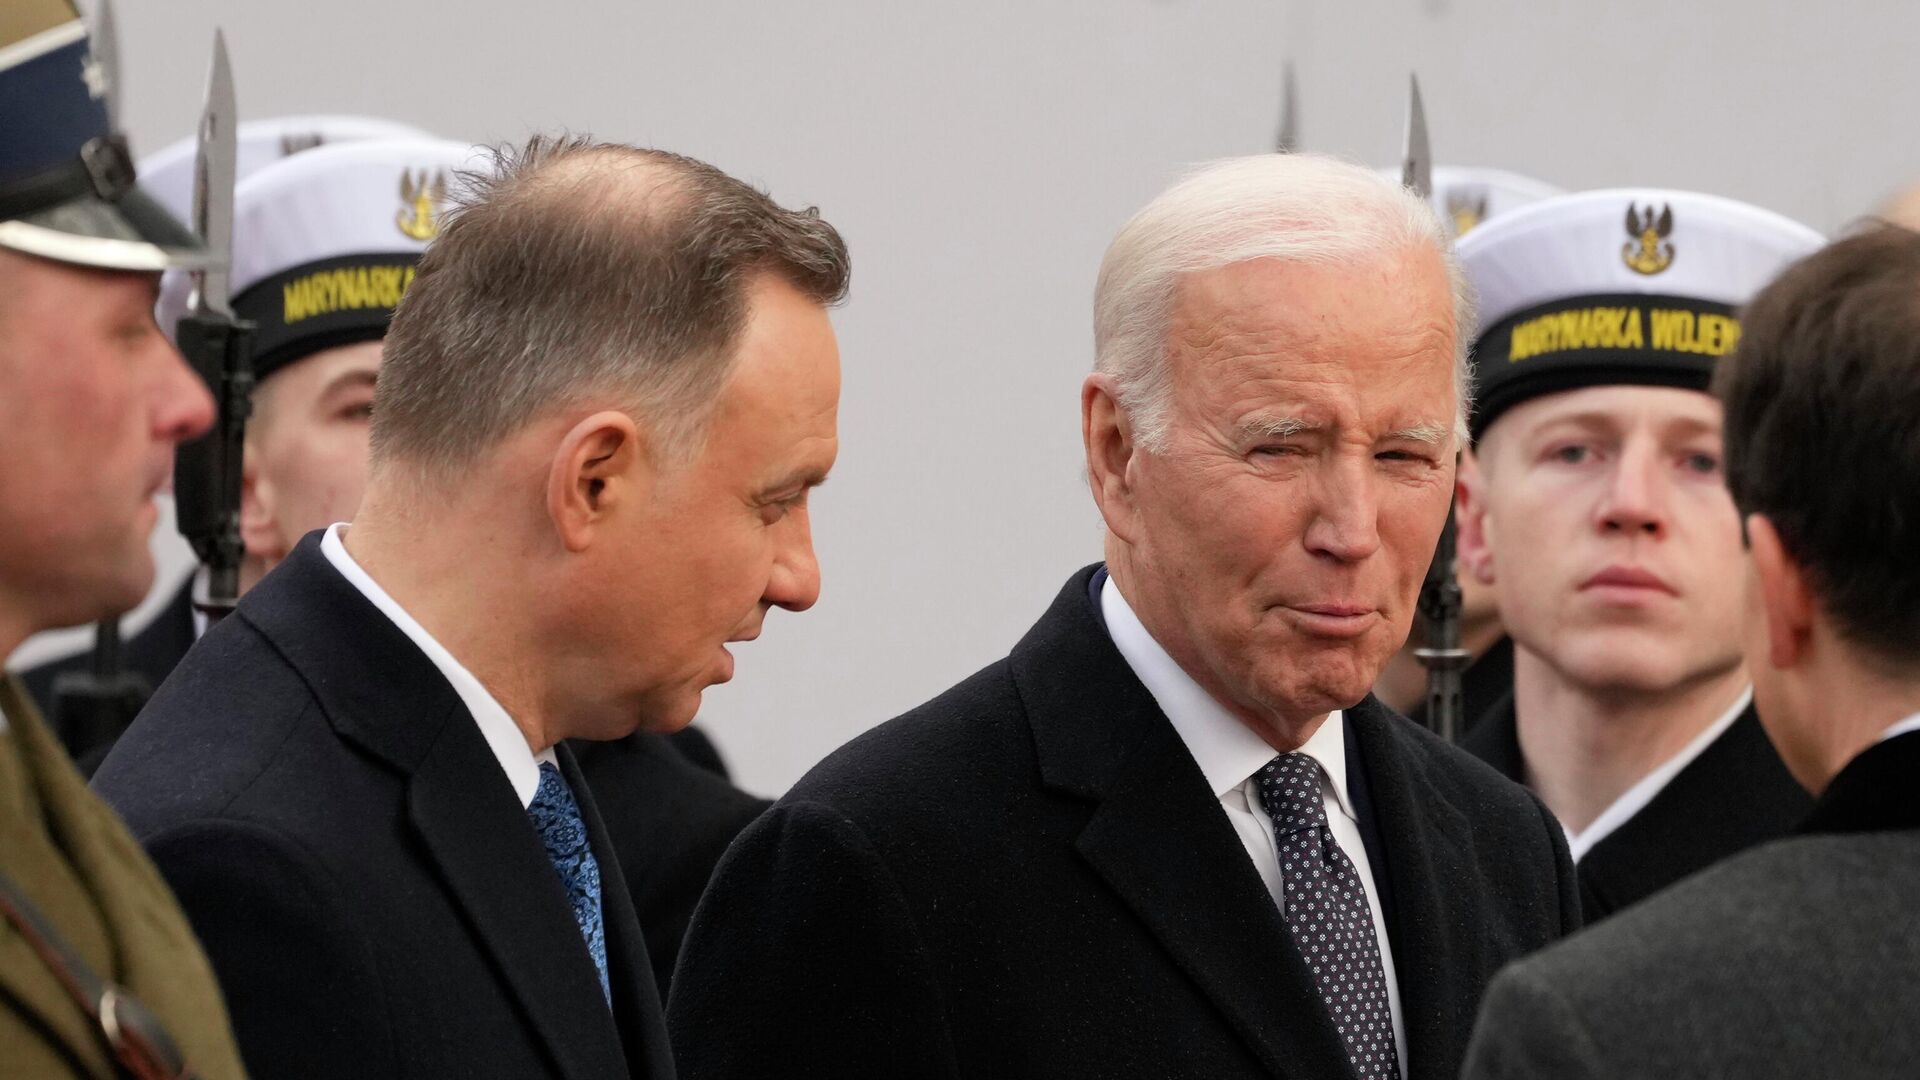 Президент Польши Анджей Дуда и президент США Джо Байден в Варшаве, Польша. 21 февраля 2023 года - ИноСМИ, 1920, 17.03.2023